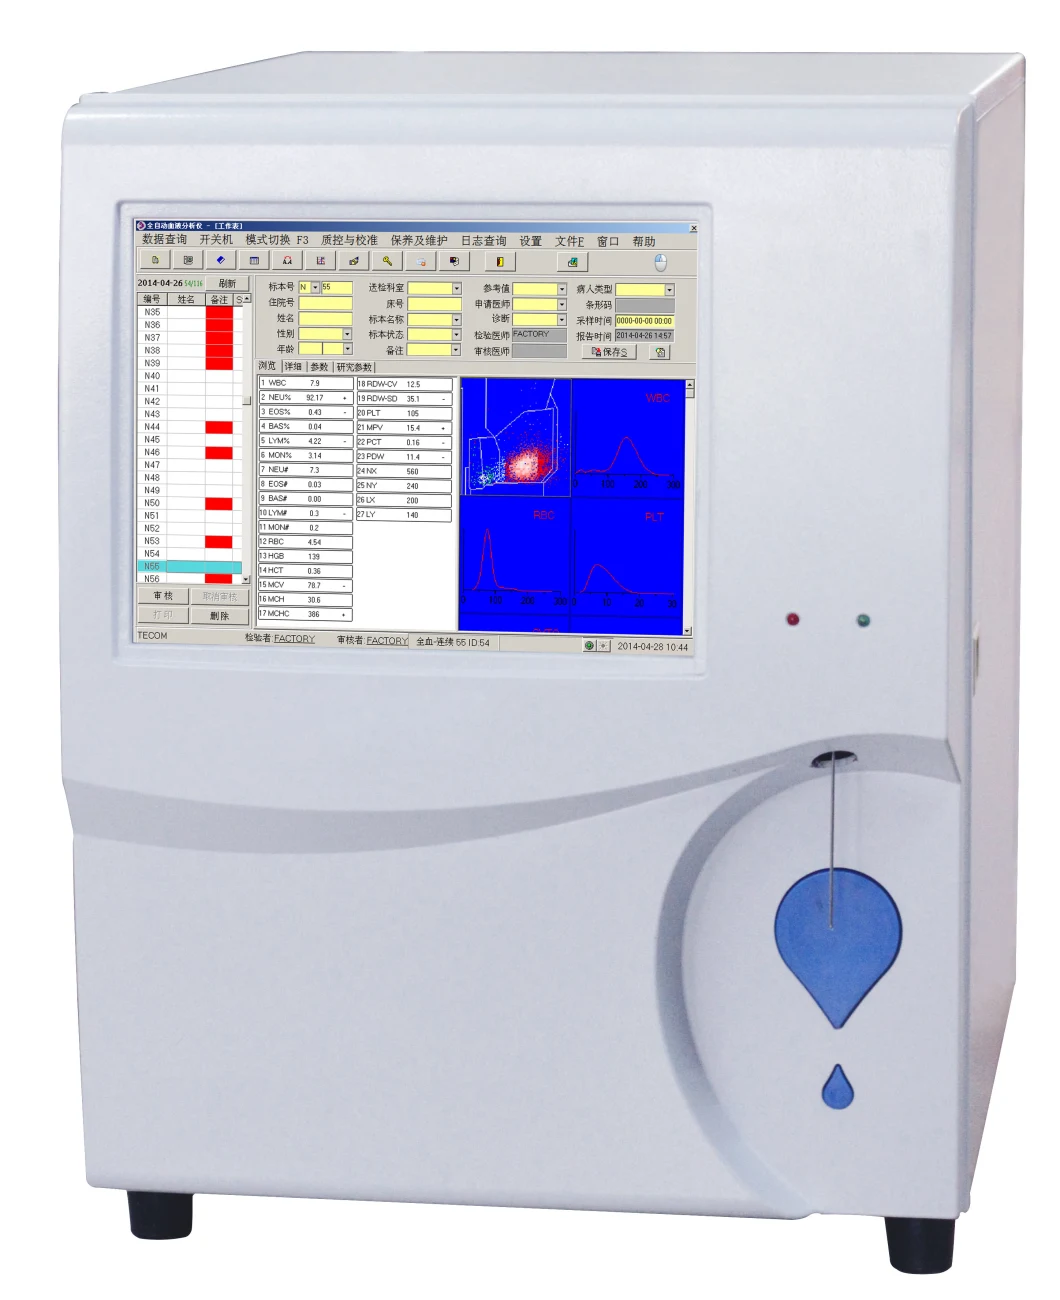 Cell Counter Hematology Analyzer Price Automated Hematology Analyzer Cormay Mslab20